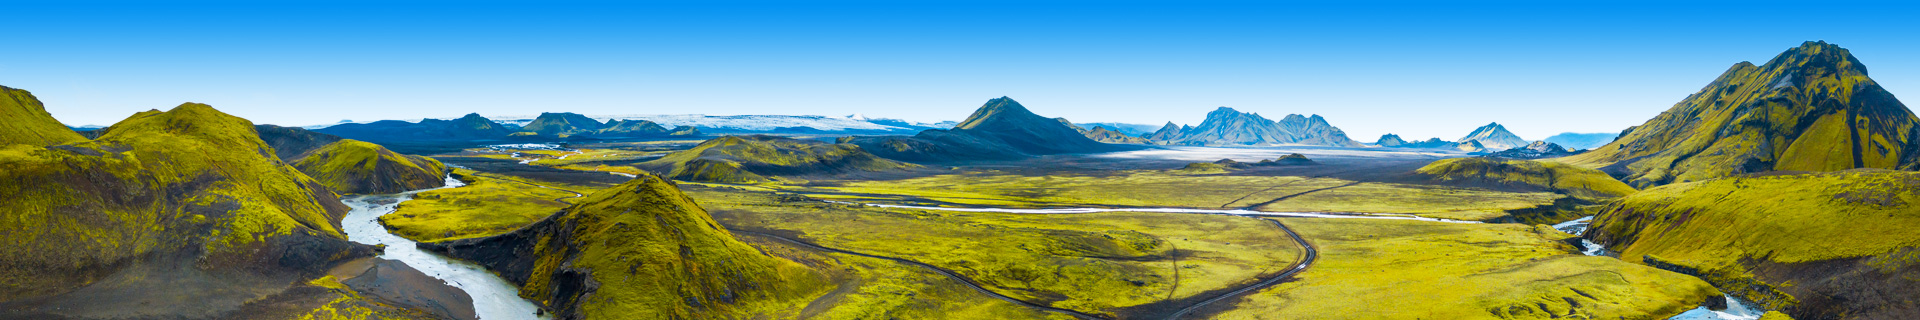 Uitzicht op het bijzondere landschap van IJsland